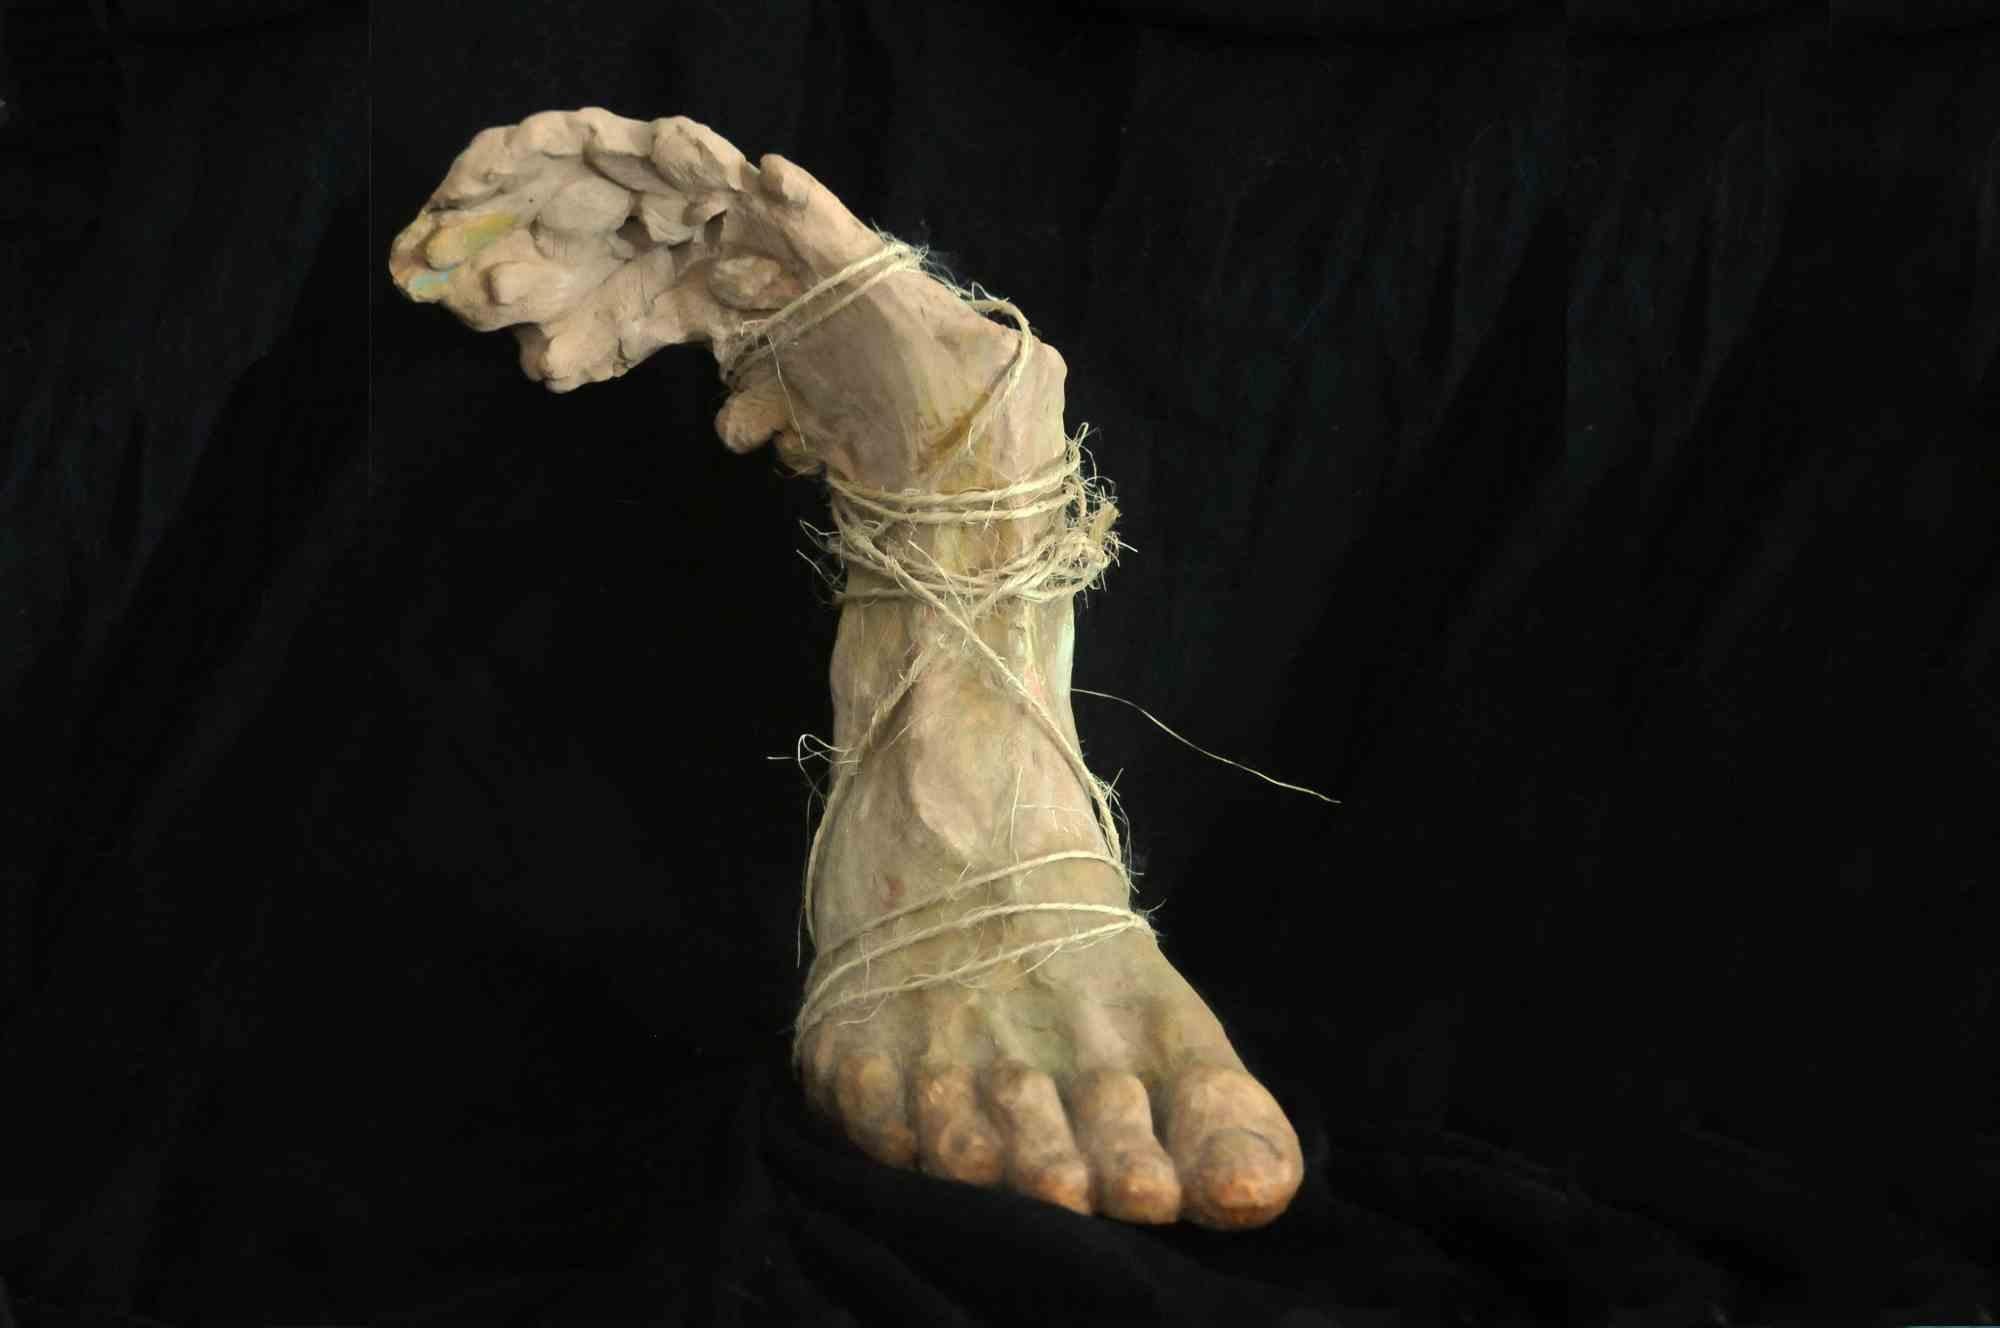 Le pied ailé est une œuvre d'art moderne réalisée par Maryam Pezeshki  en 2007.

Sculpture en terre cuite.

Titre original : Piede alato

 

Maryam Pezeshki  est né à Téhéran le 18 août 1977. Elle a commencé à peindre à l'âge de trois ans. Son